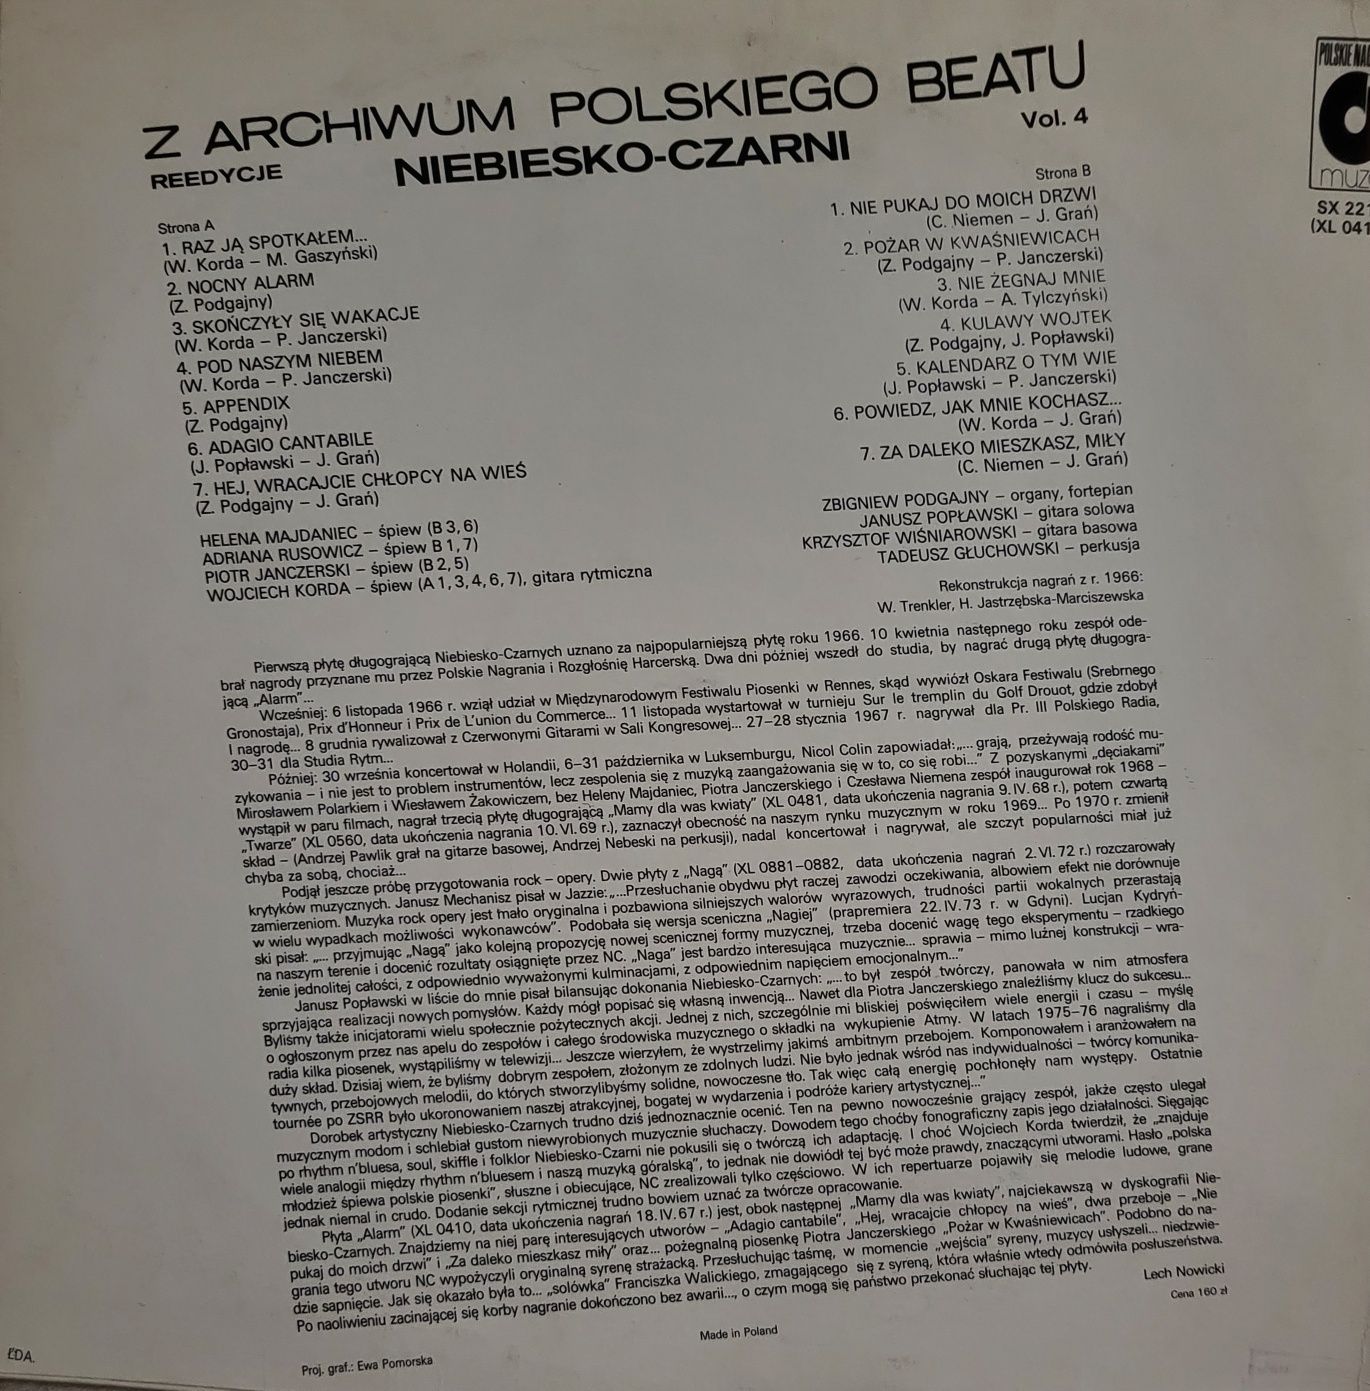 Z archiwum Polskiego Beatu Vol. 4 Niebiesko czarni - Alarm EX